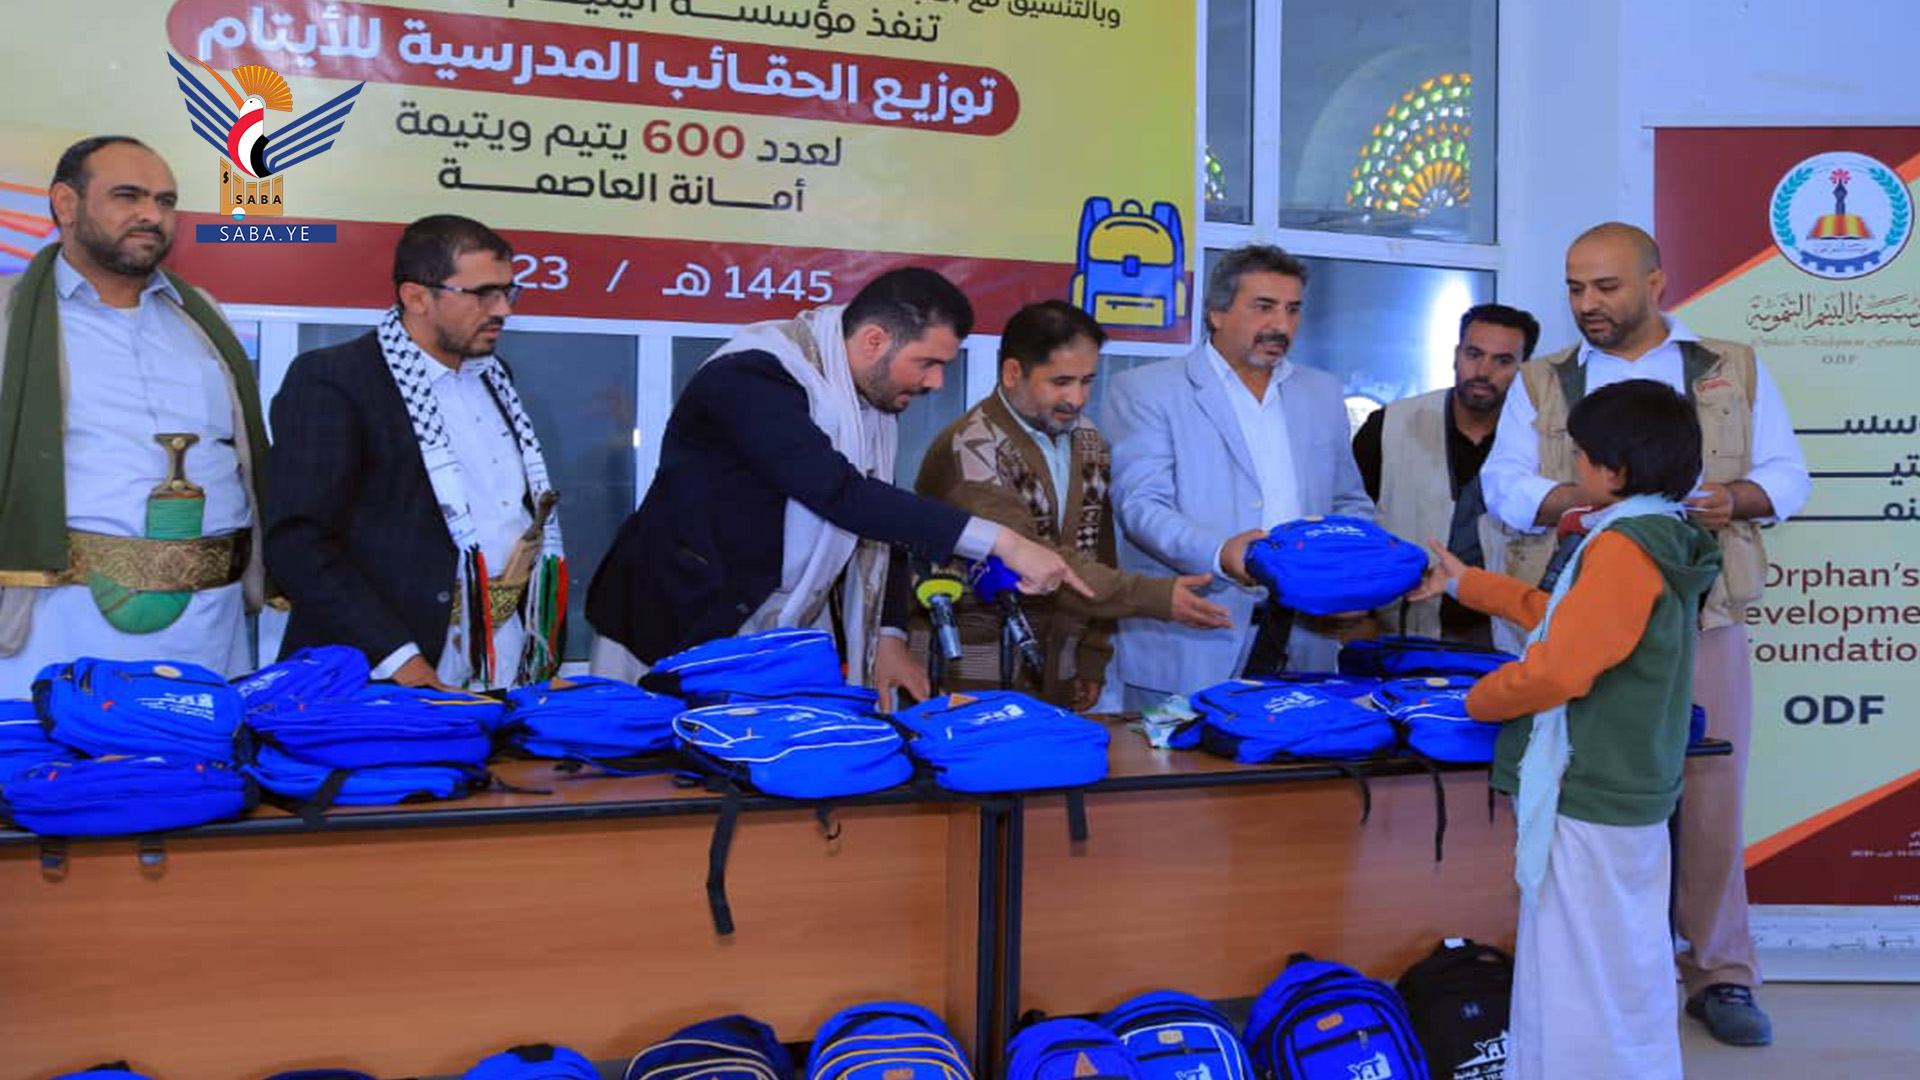 مؤسسة اليتيم توزع 600 حقيبة مدرسية للأيتام بأمانة العاصمة